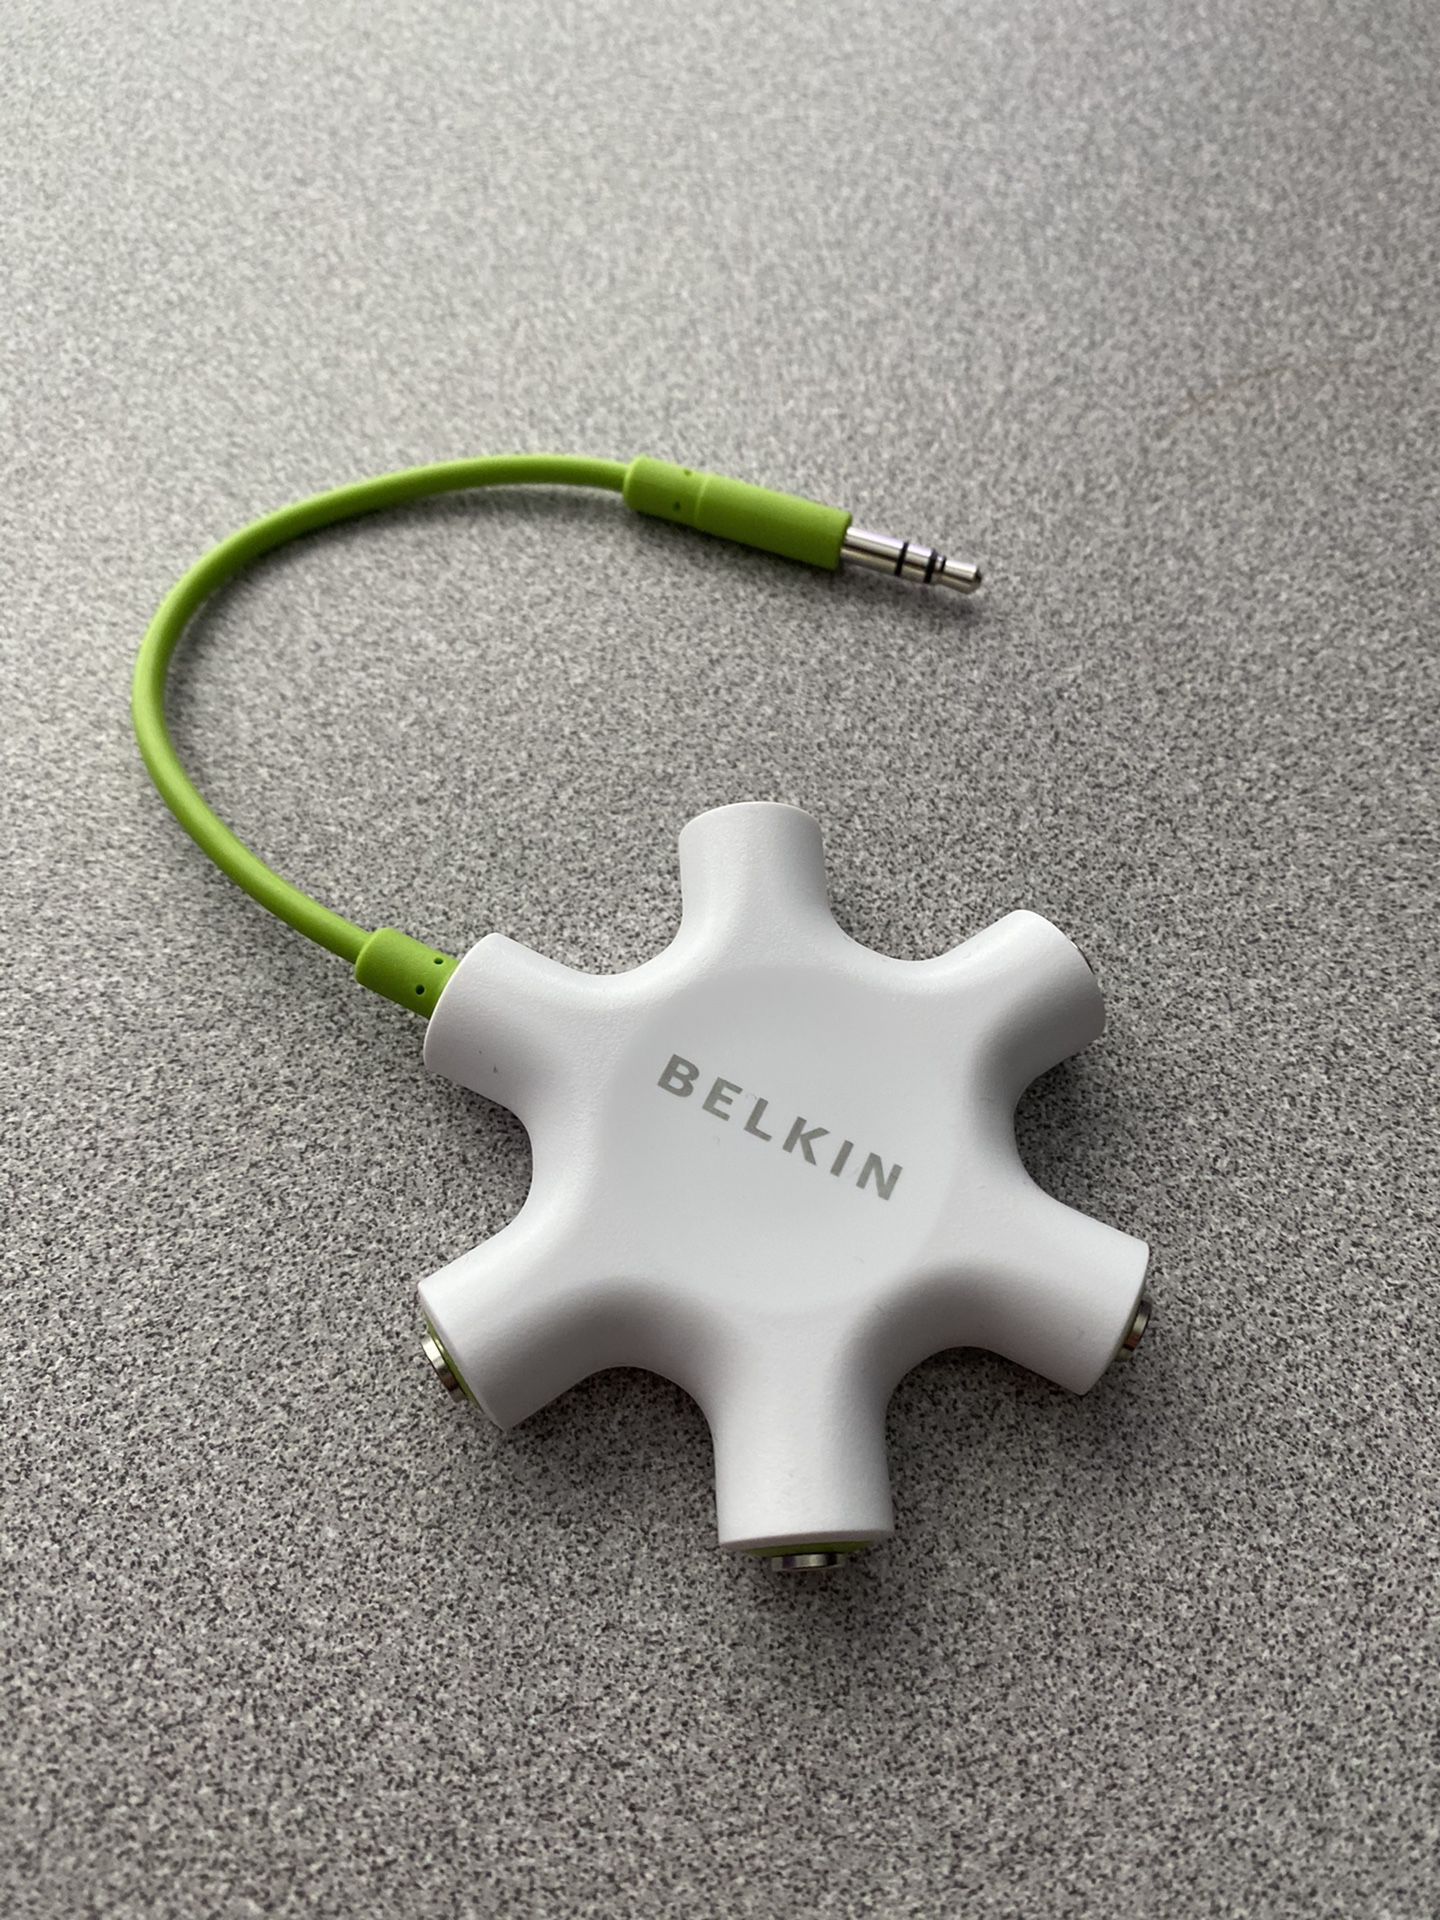 Belkin rockstar 5 way headphone splitter perfect!